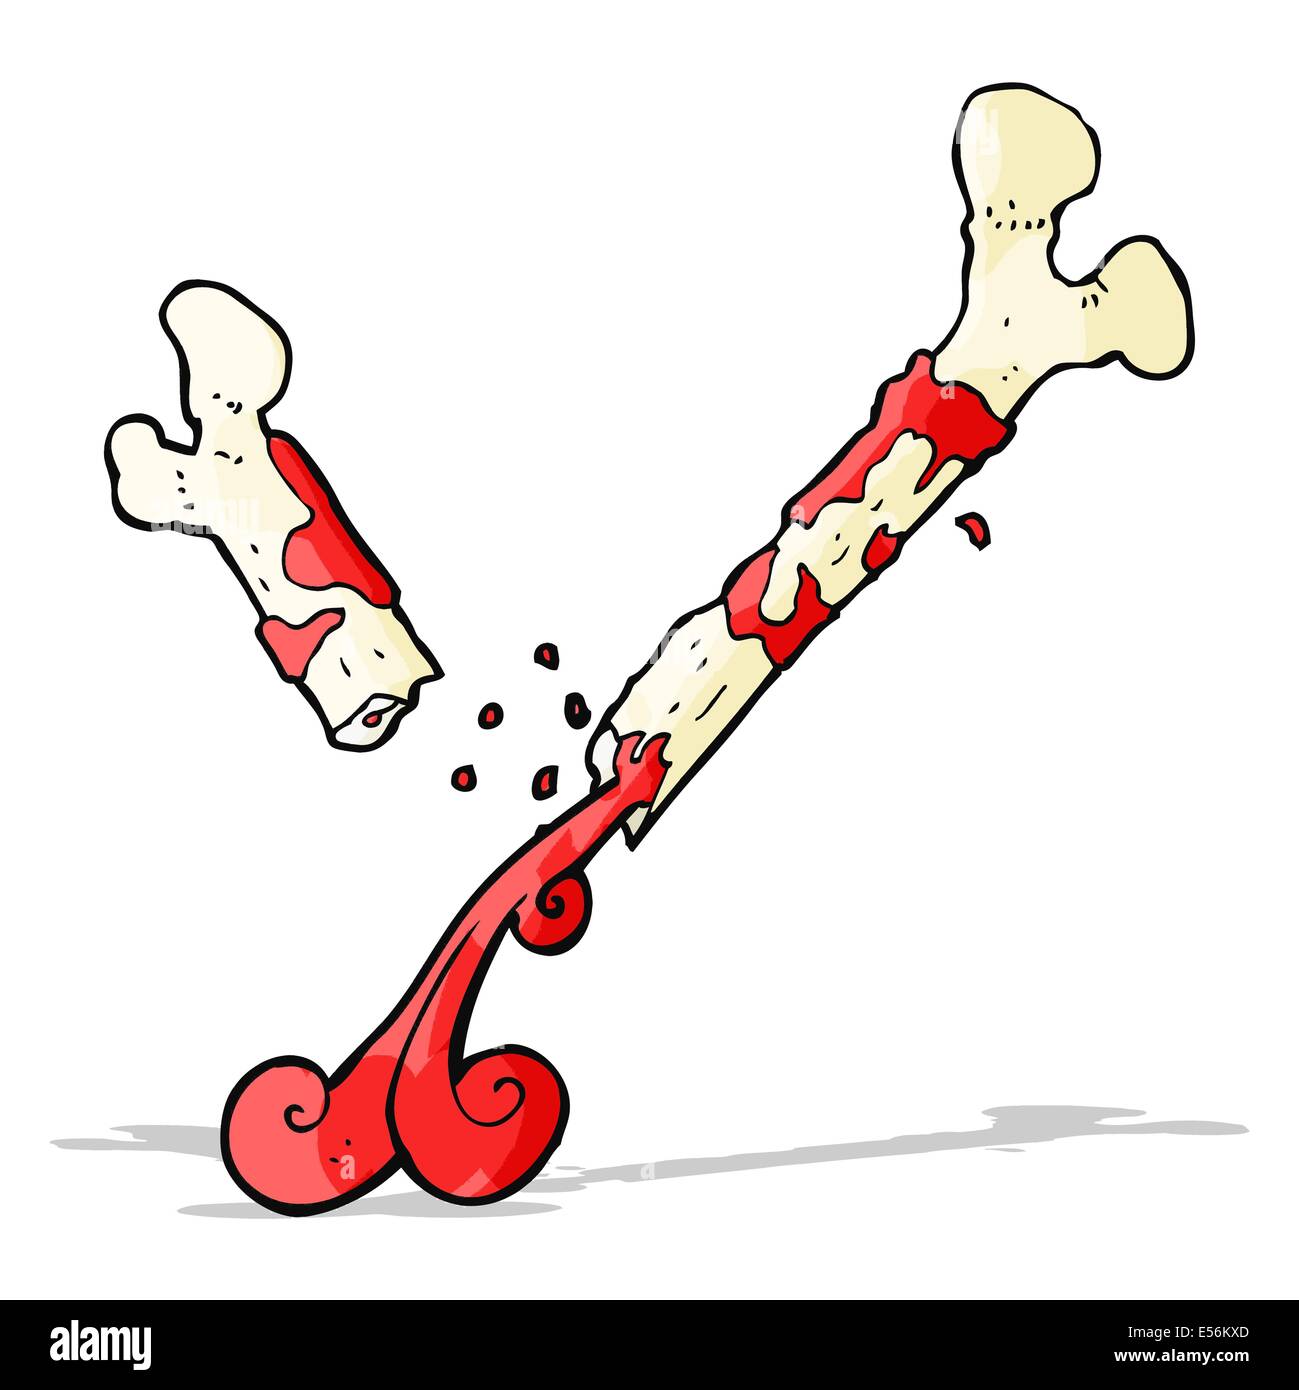 gross broken bone cartoon Stock Vector Image & Art - Alamy